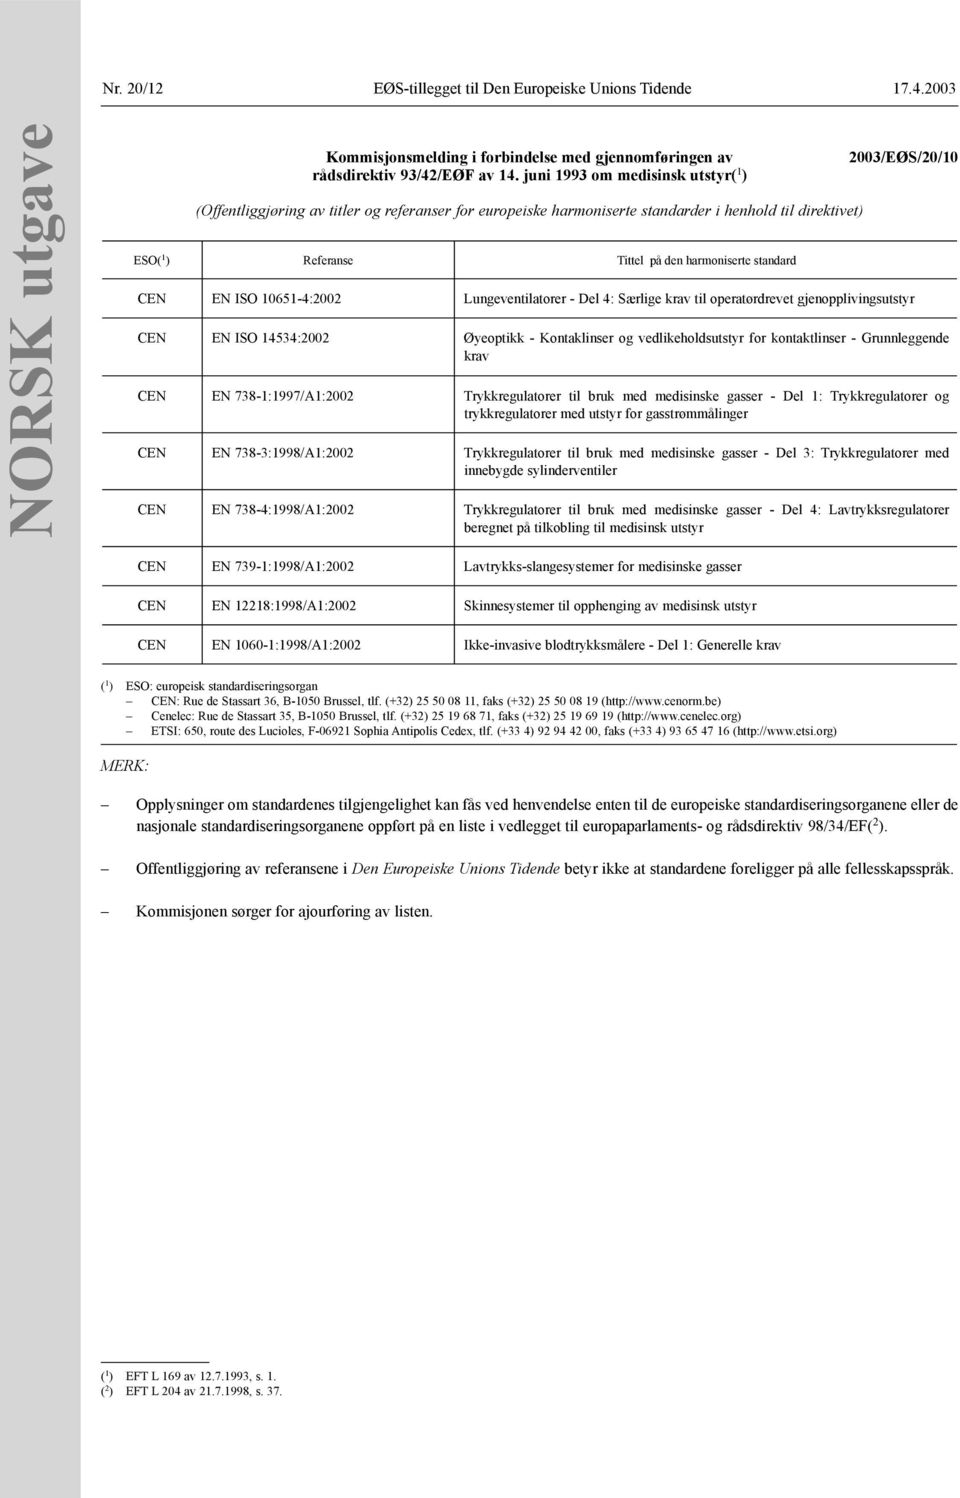 2003/EØS/20/10 CEN EN ISO 10651-4:2002 Lungeventilatorer - Del 4: Særlige krav til operatørdrevet gjenopplivingsutstyr CEN EN ISO 14534:2002 Øyeoptikk - Kontaklinser og vedlikeholdsutstyr for